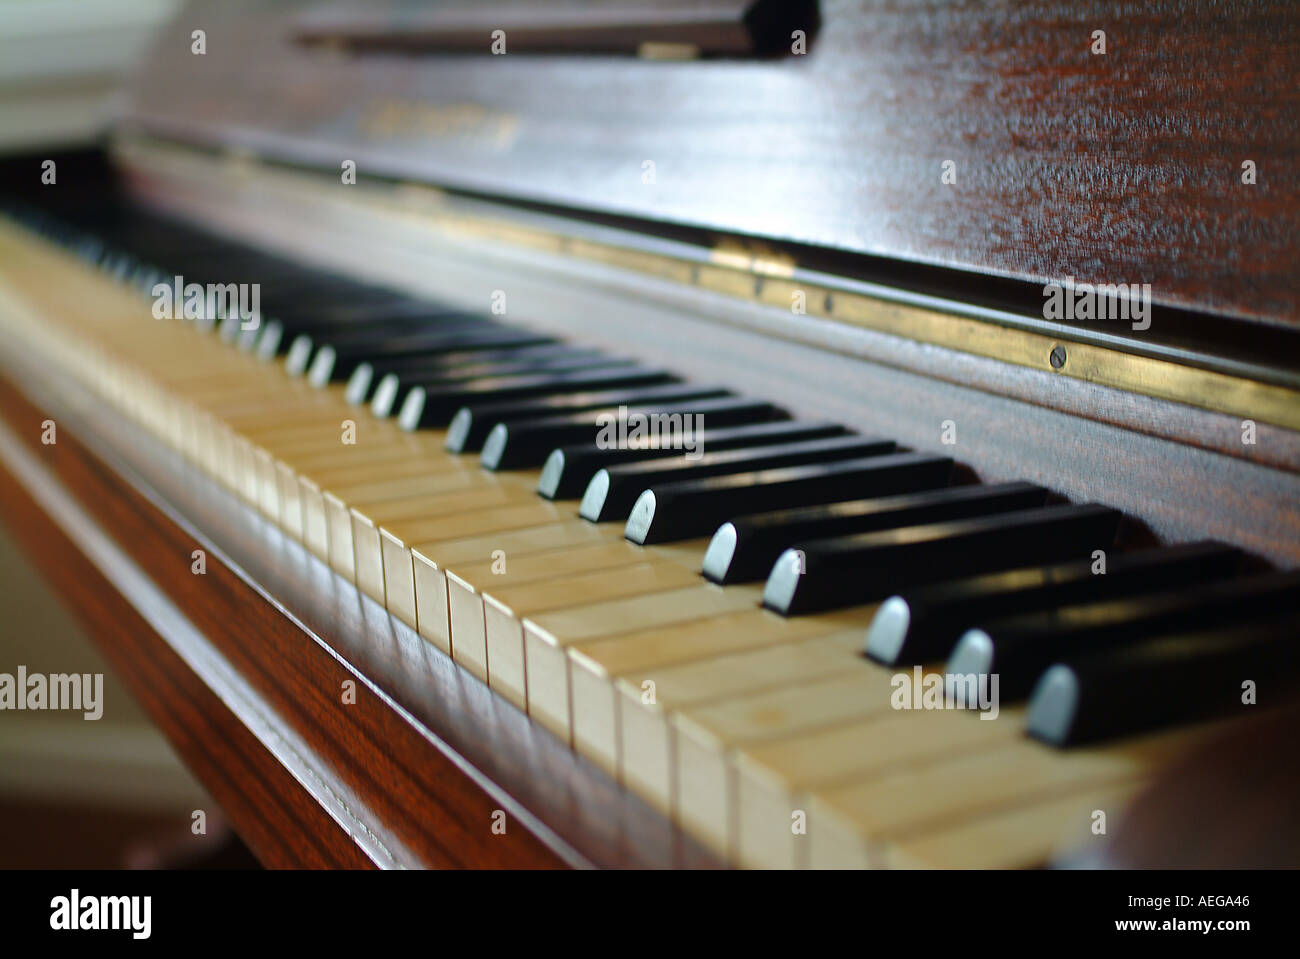 Sweet Home Musiknoten Klavier-Tastatur schwarz weiße Holz Holz Skala klingt Akkorden große schwere abstrakter Begriff Sonstige Musik Stockfoto